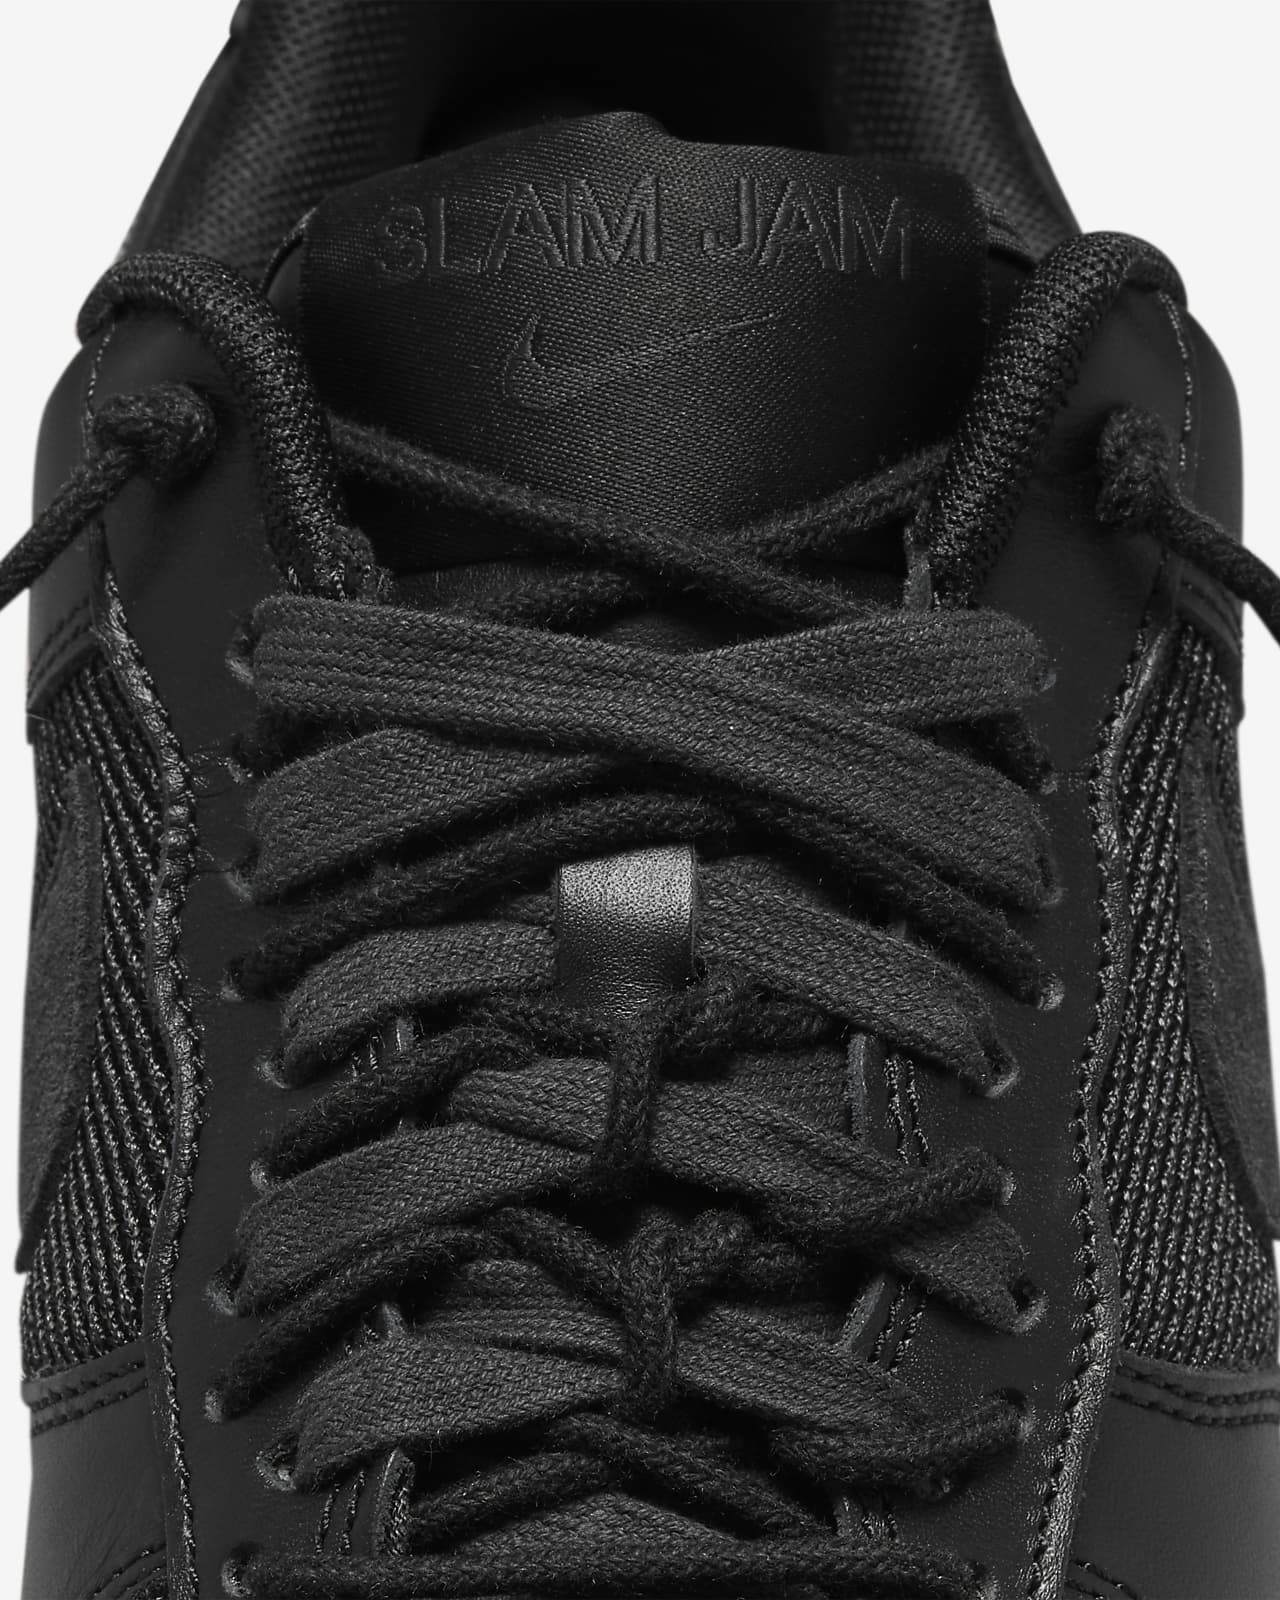 Slam Jam × Nike Air Force 1 Low